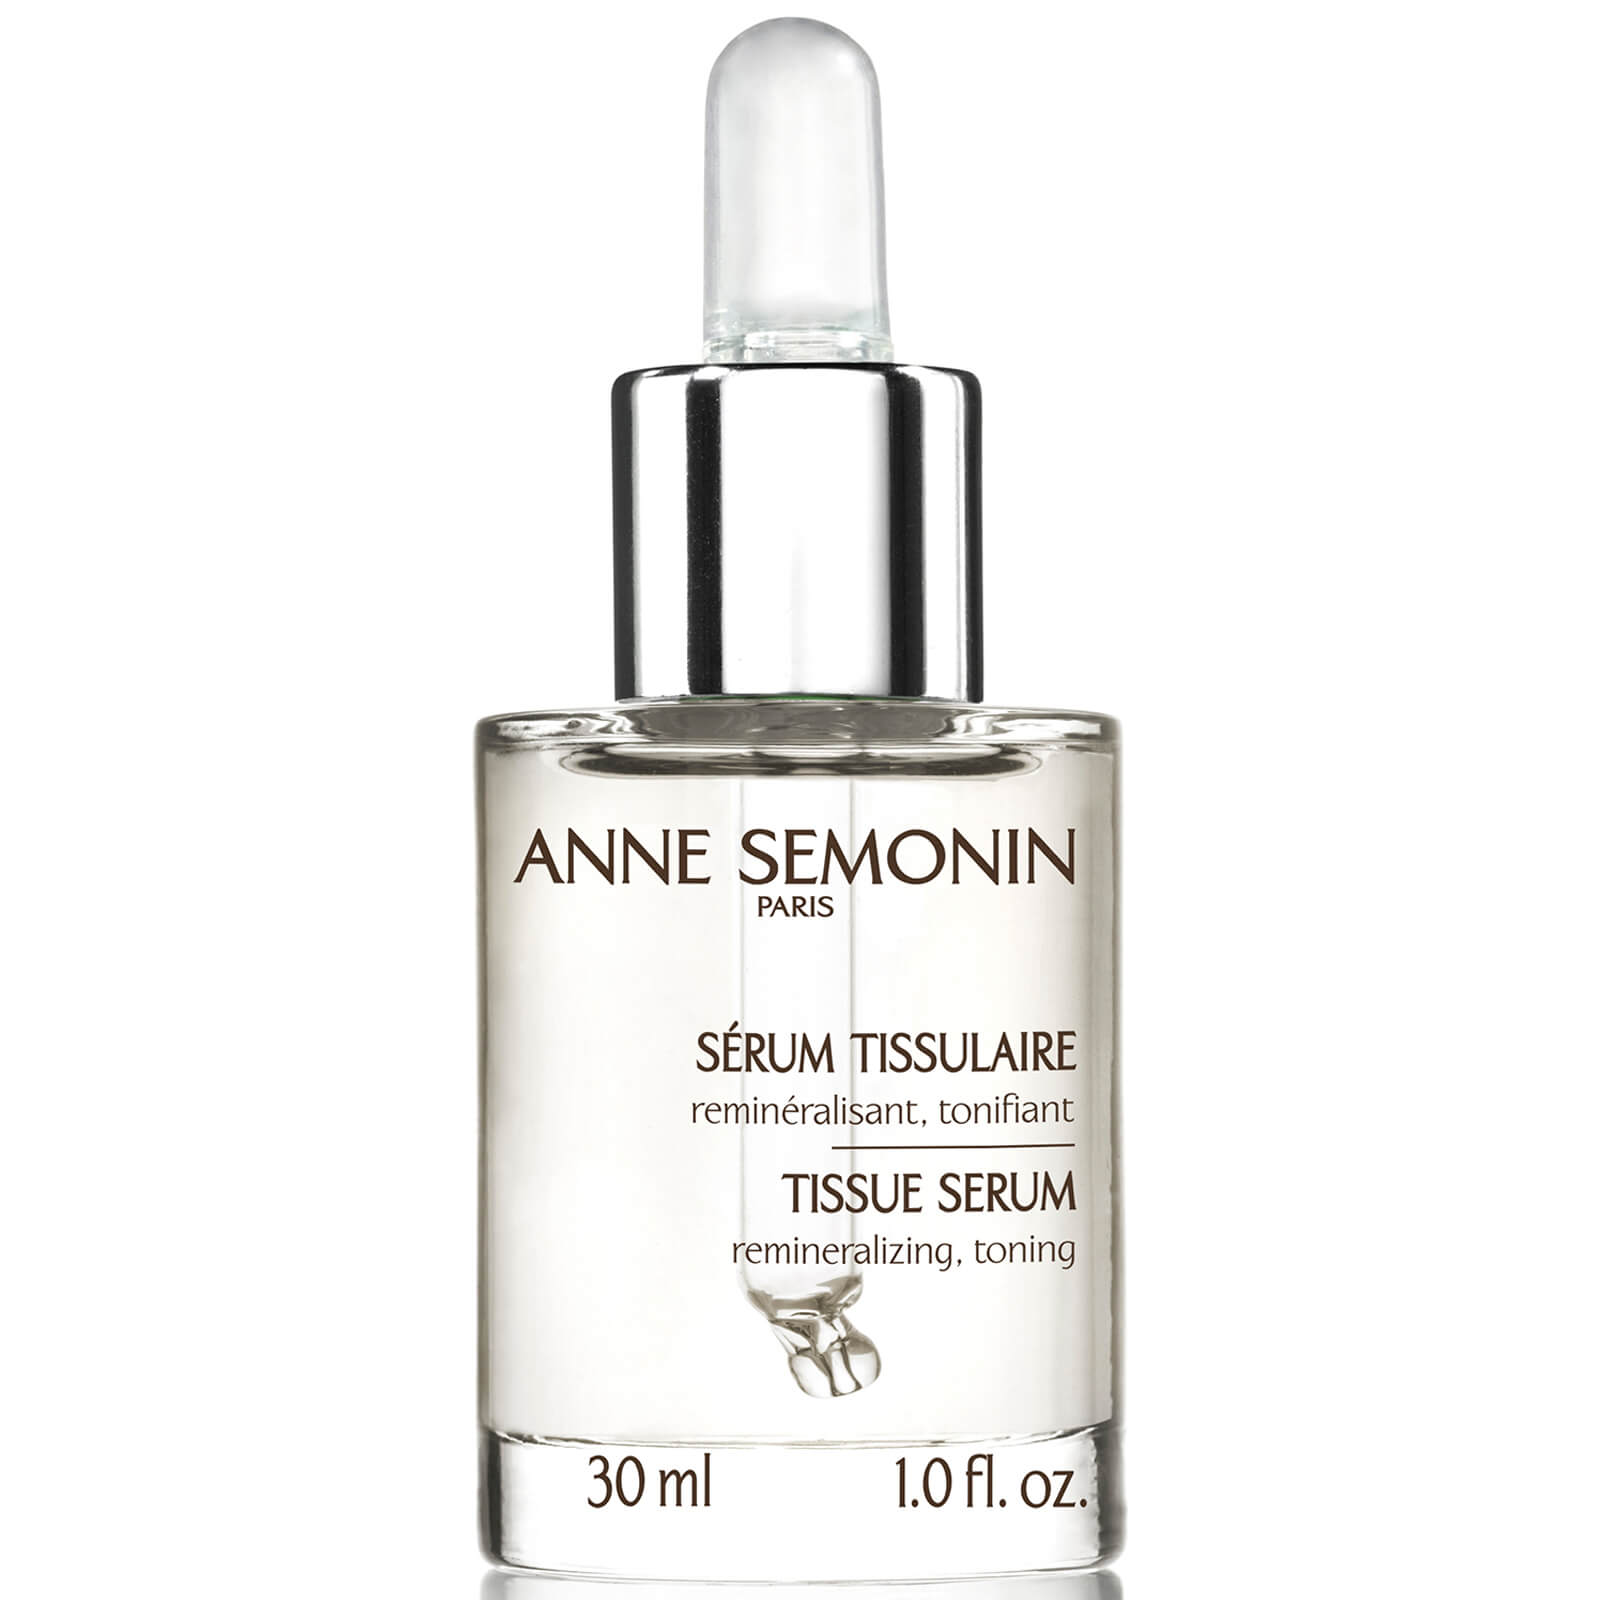 Anne Semonin Tissue Serum (30ml)